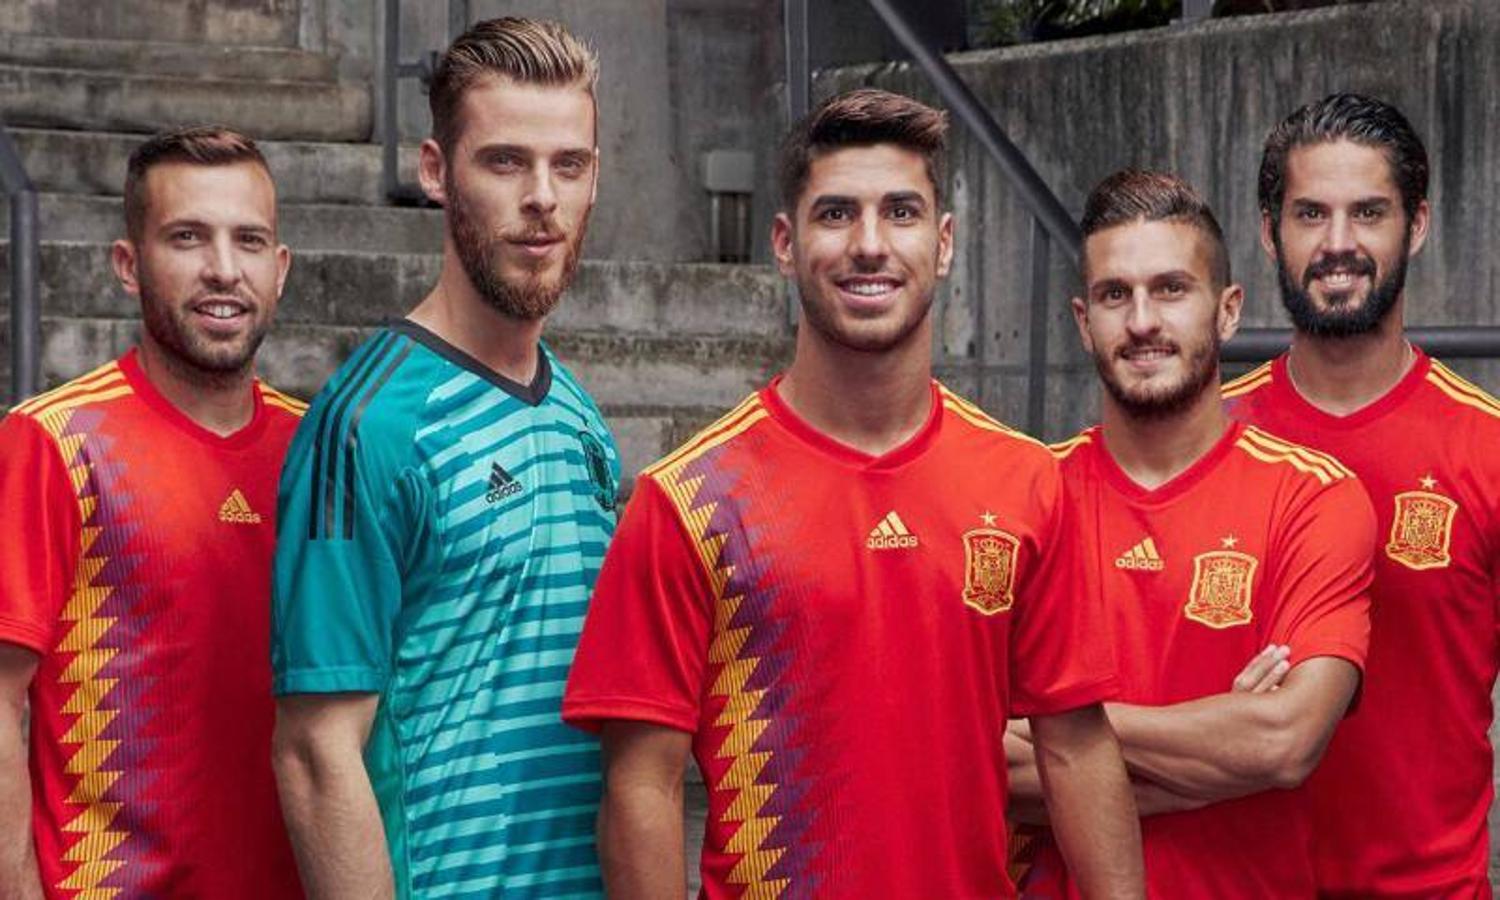 Polémica por la nueva camiseta de España para el Mundial. Ha provocado muchas críticas en las redes sociales por parecerse a los colores de la bandera republicana.